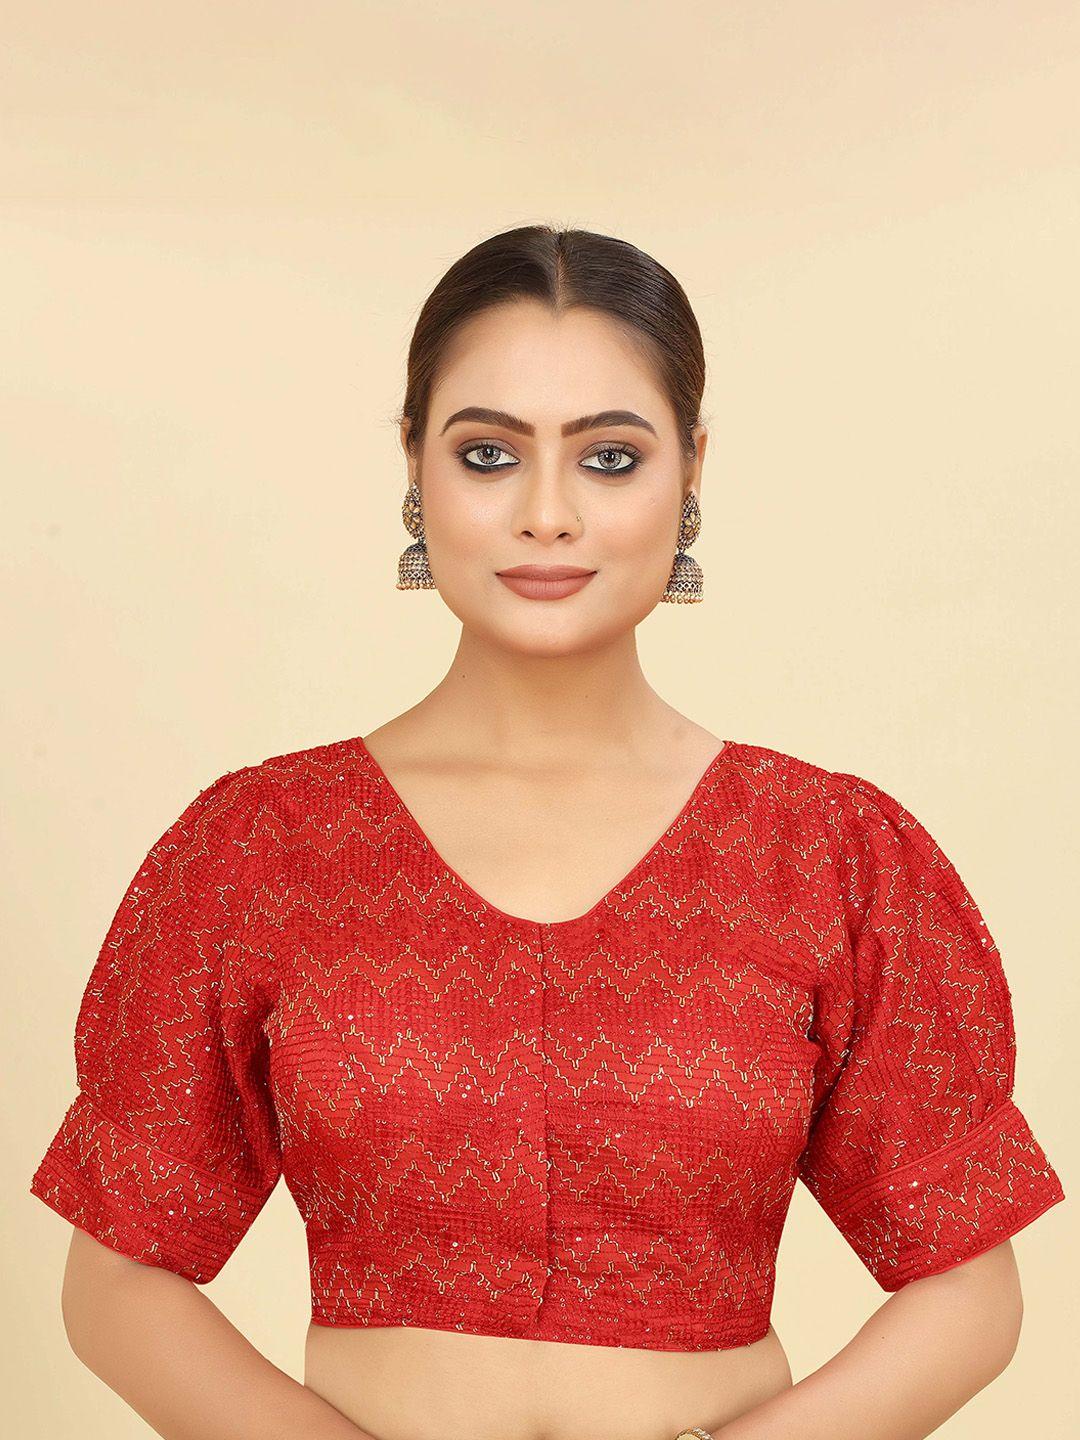 shopgarb golden thread, sequence & embroidery saree blouse